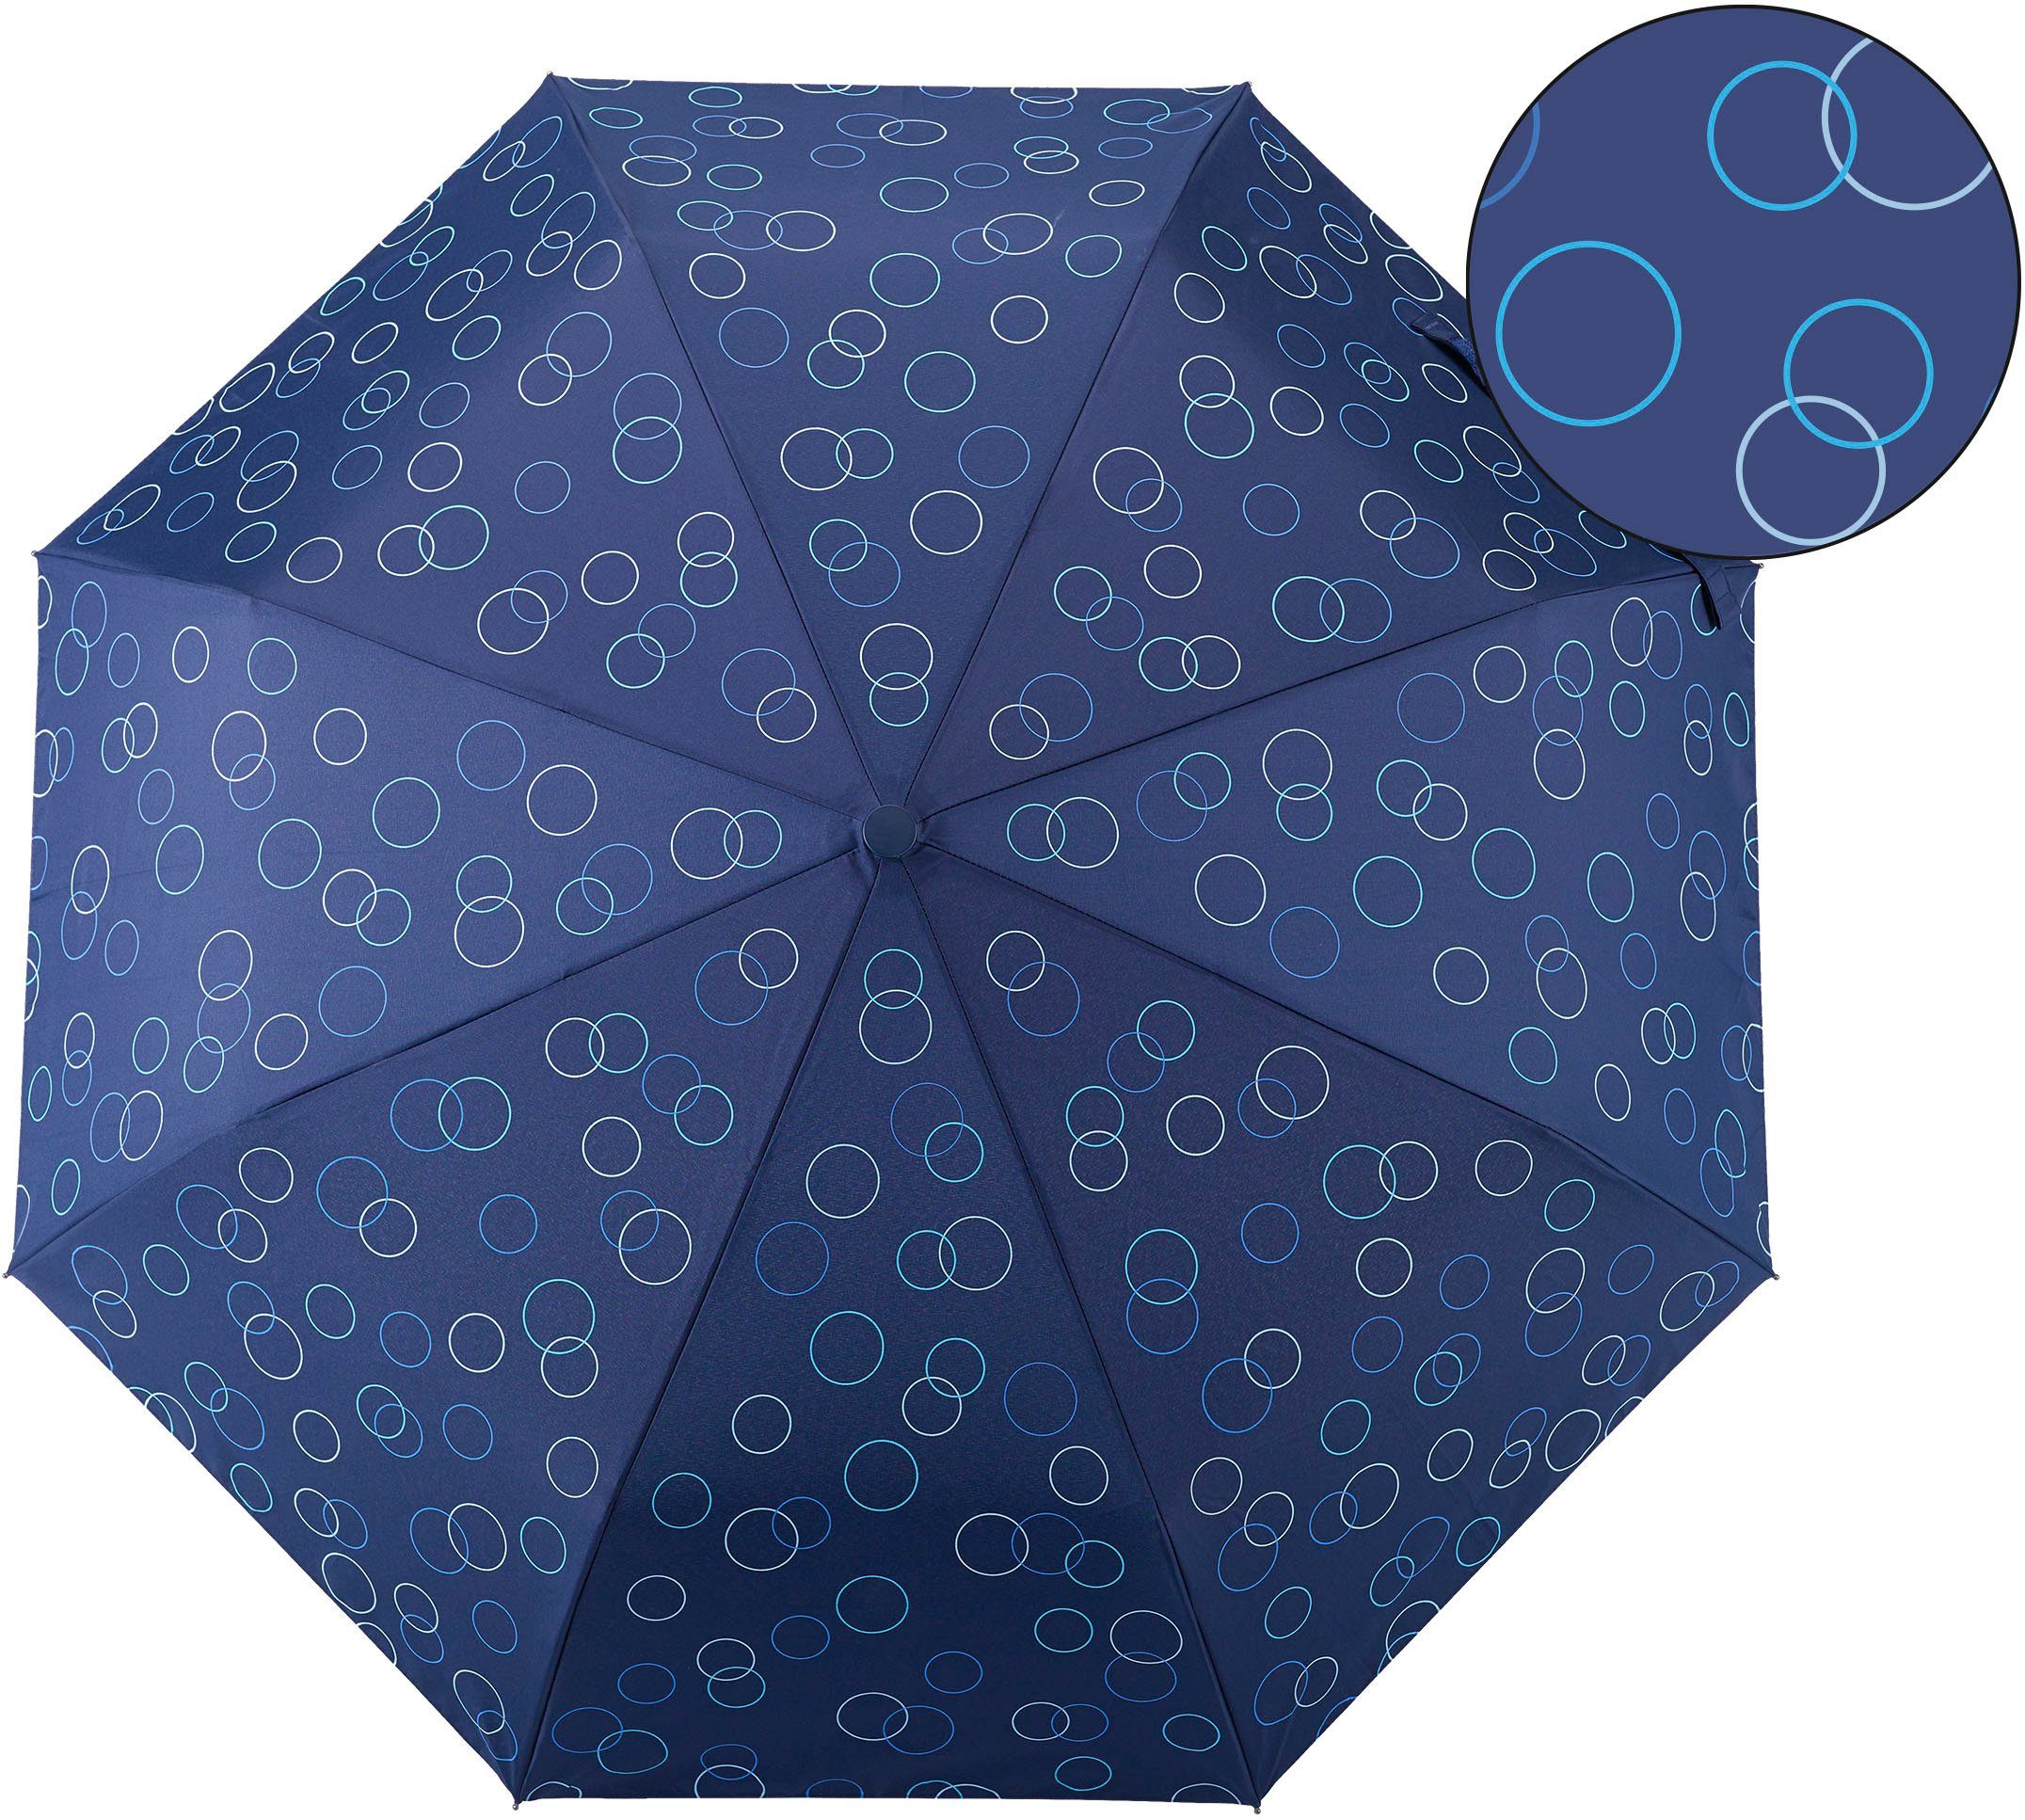 Umwelt-Taschenschirm, blau marine, Taschenregenschirm Kreise EuroSCHIRM®